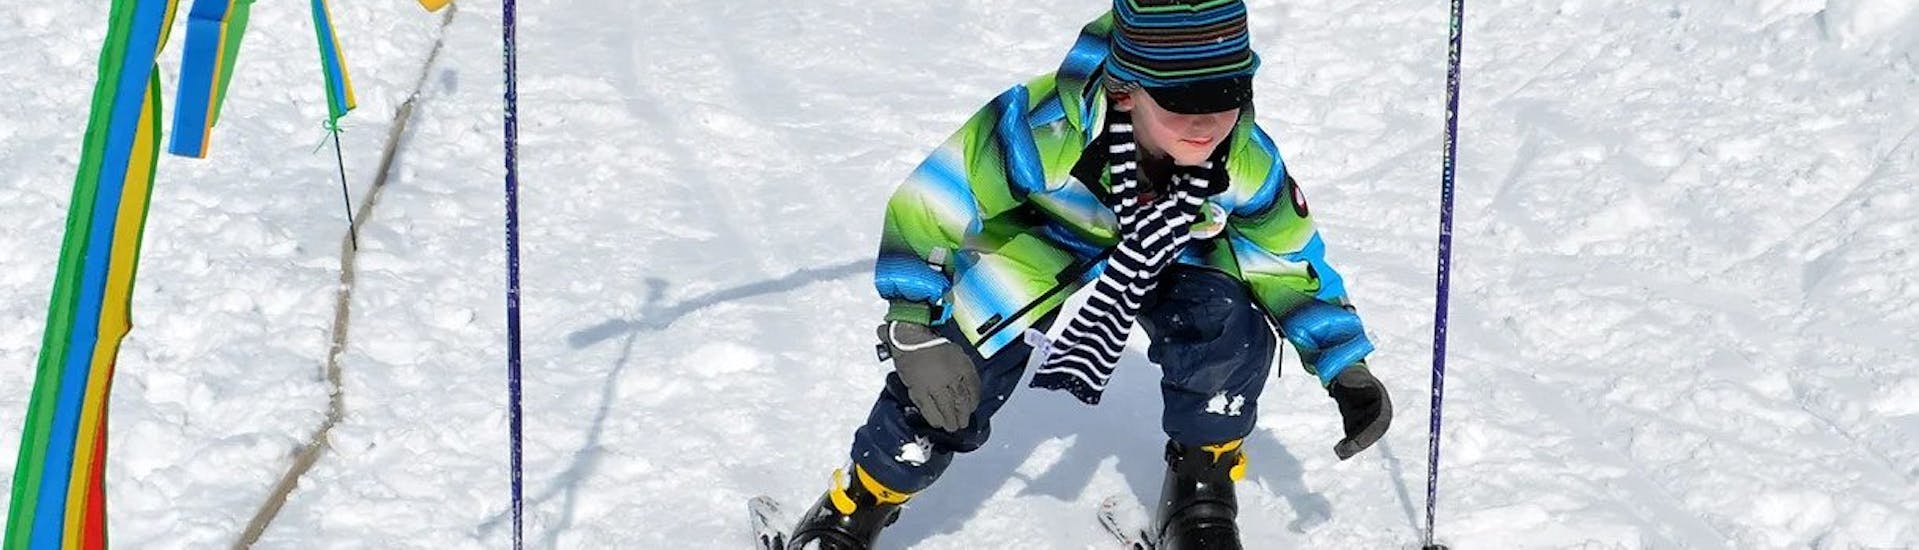 Lezioni private di sci per bambini a partire da 3 anni per tutti i livelli.